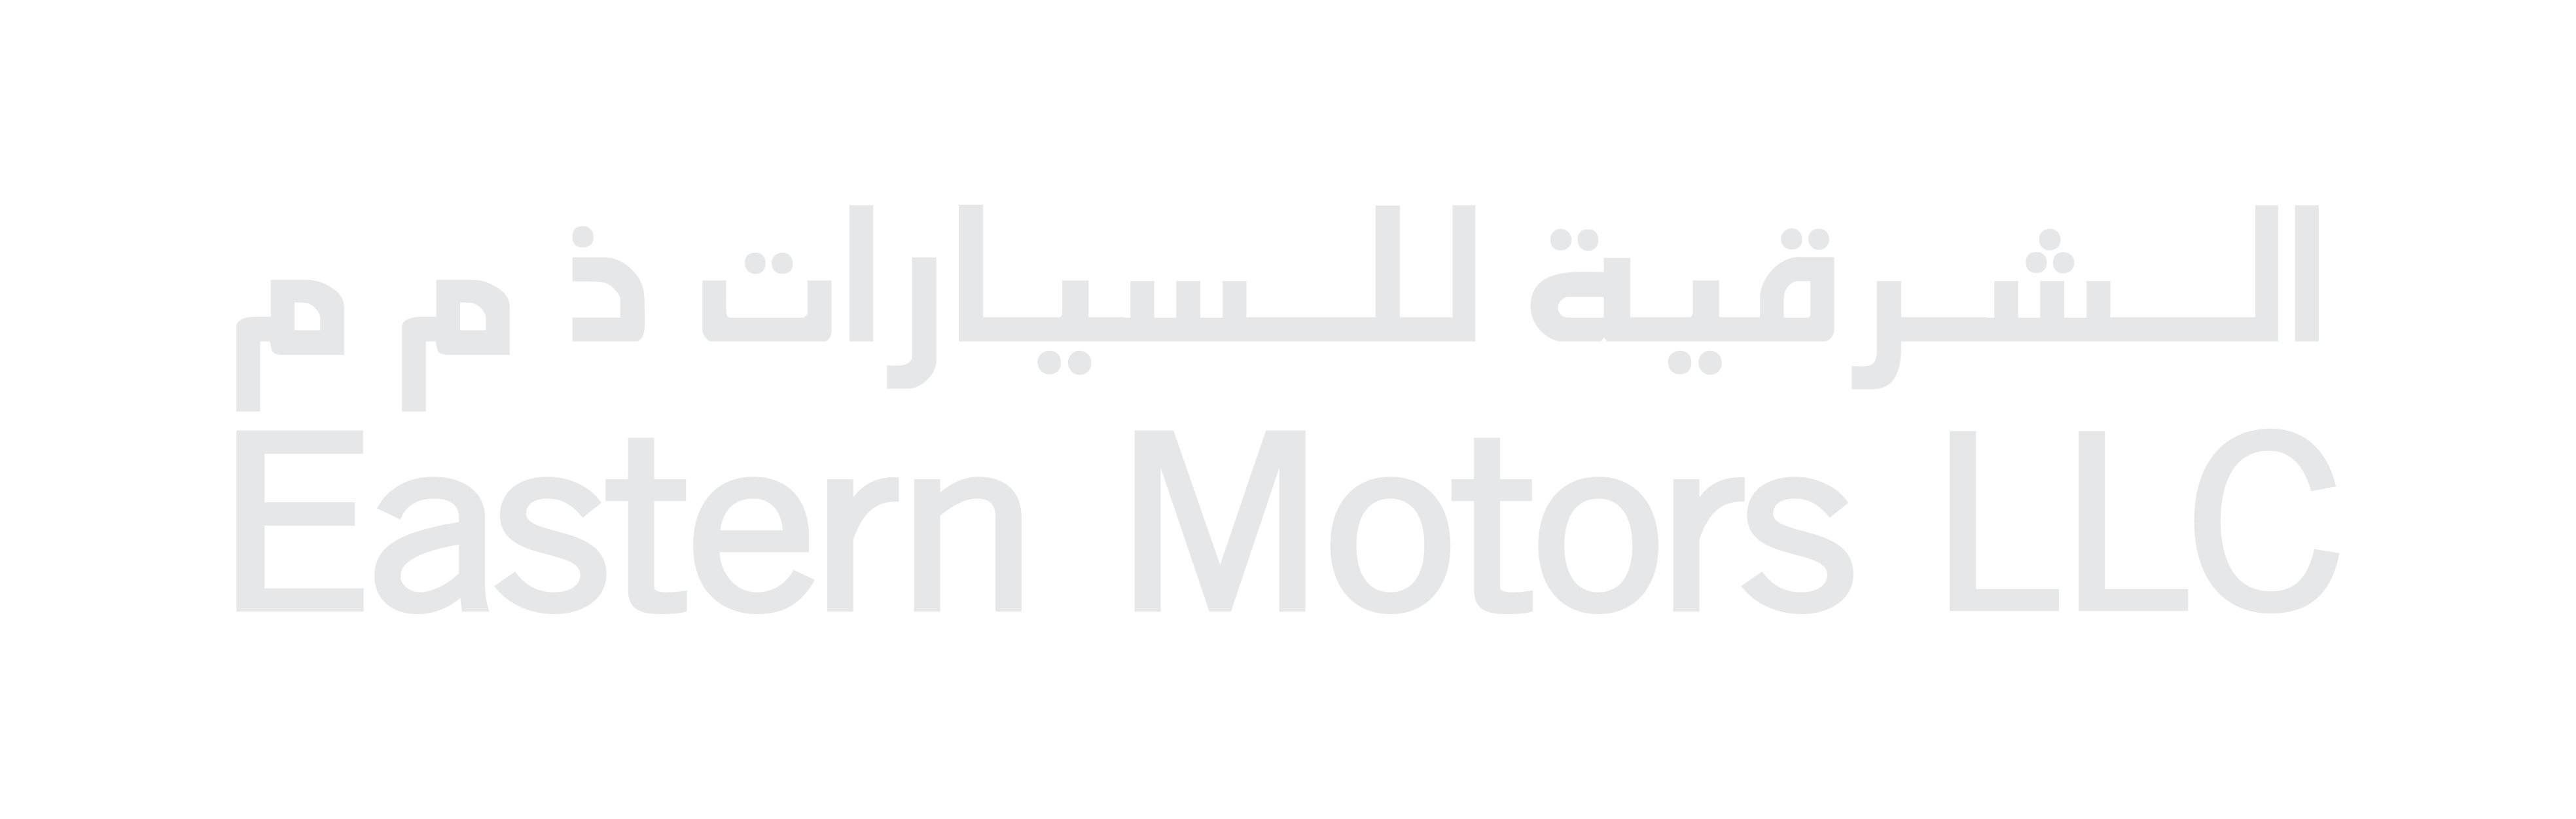 Eastern Motors